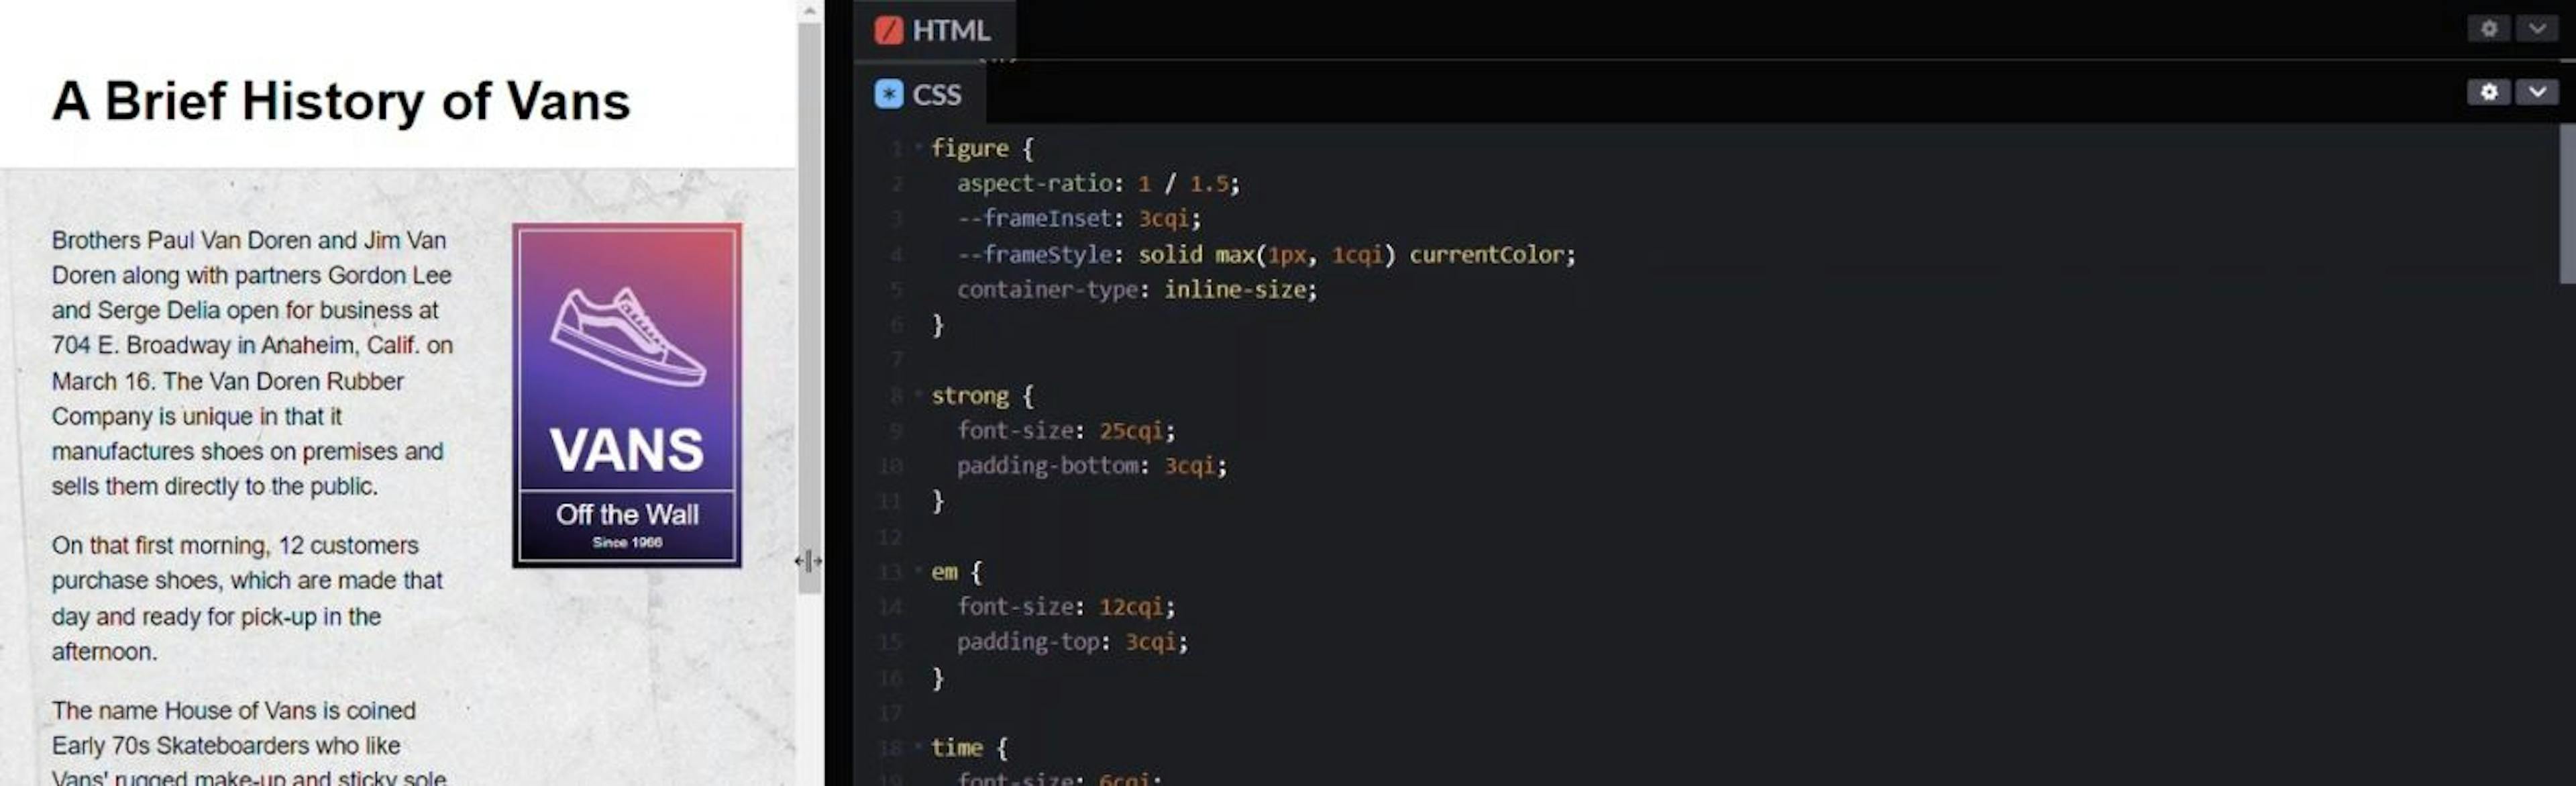 Annonce sous forme de requêtes de conteneur HTML et CSS dans des fenêtres d'affichage plus petites